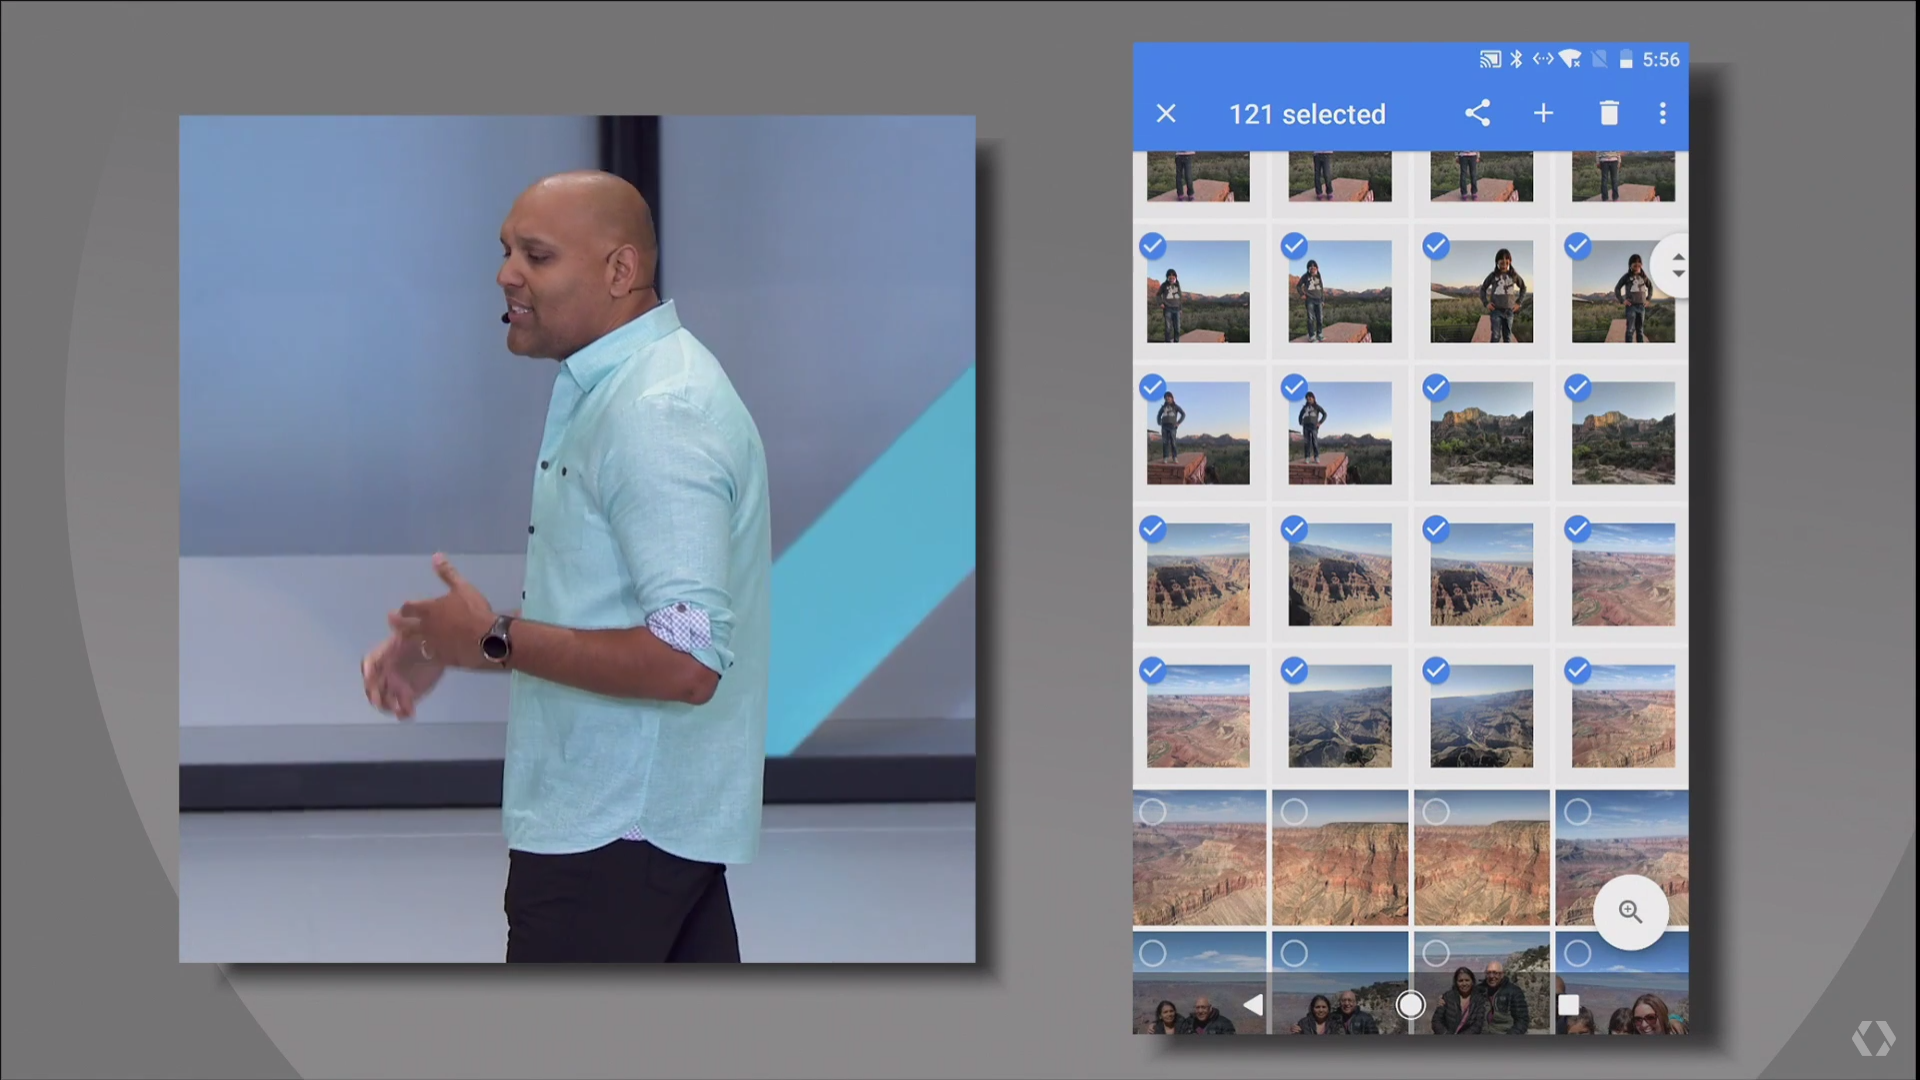 [Google I/O] เปิดตัว Google Lens ผู้ช่วยแปลความจากภาพสุดล้ำ, อัพเกรด Assistant, Home และ Photos